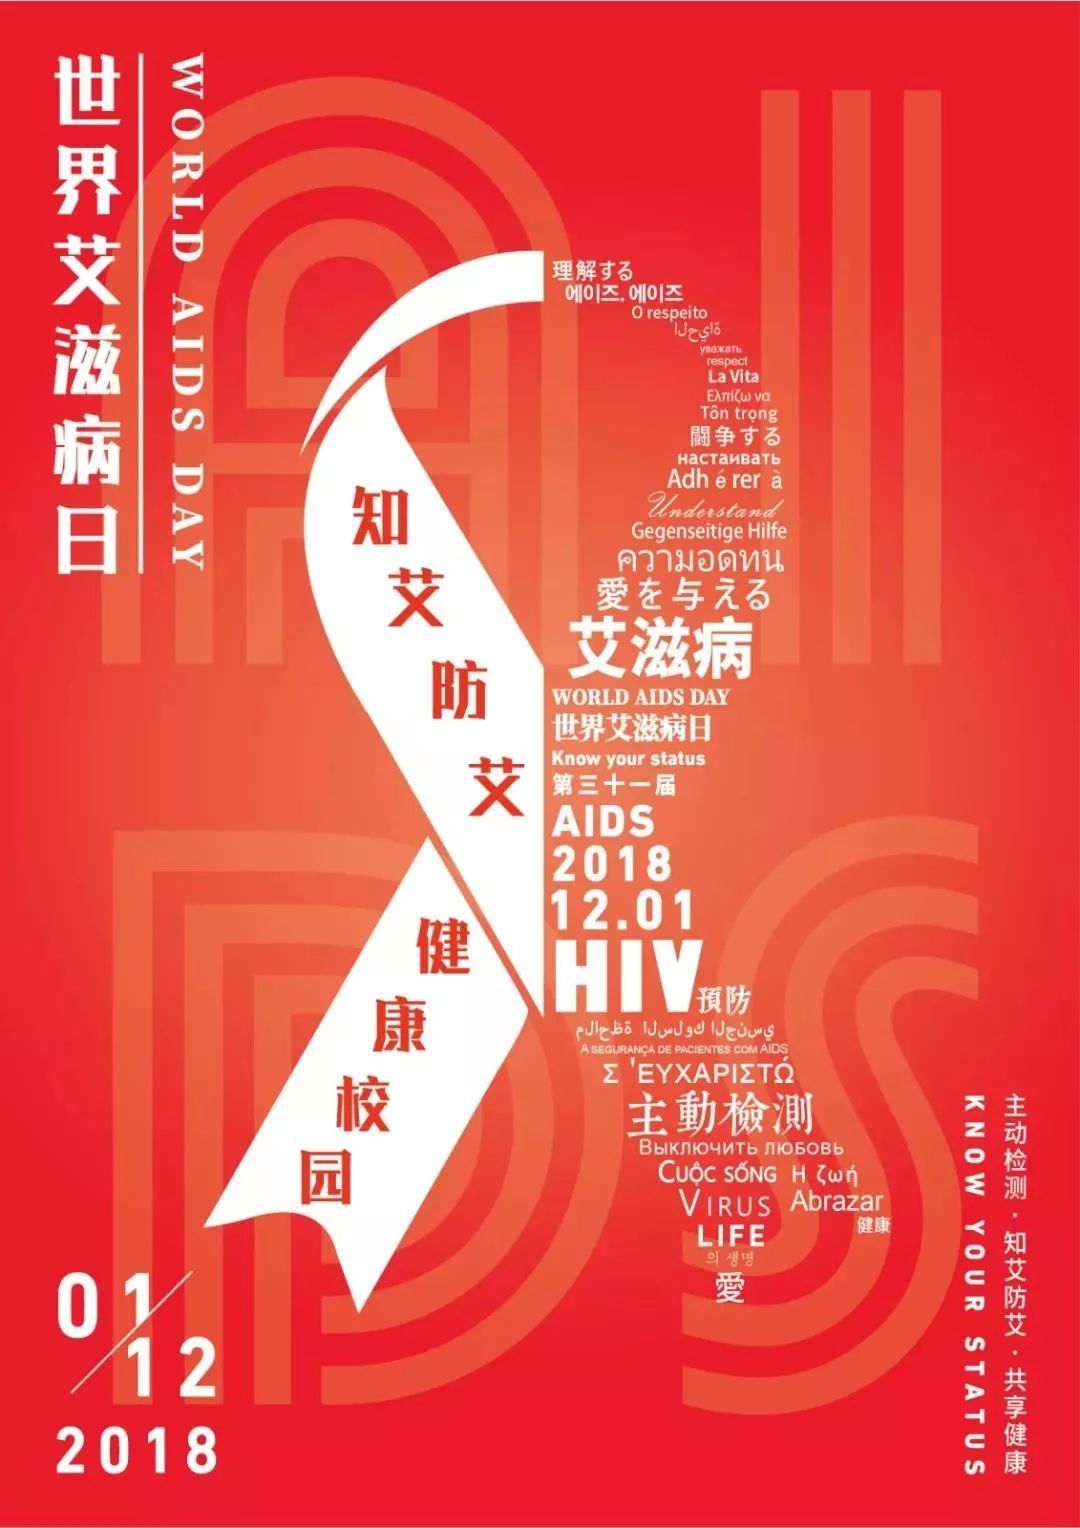 知艾防艾健康校园预防艾滋病海报设计大赛入围作品展示